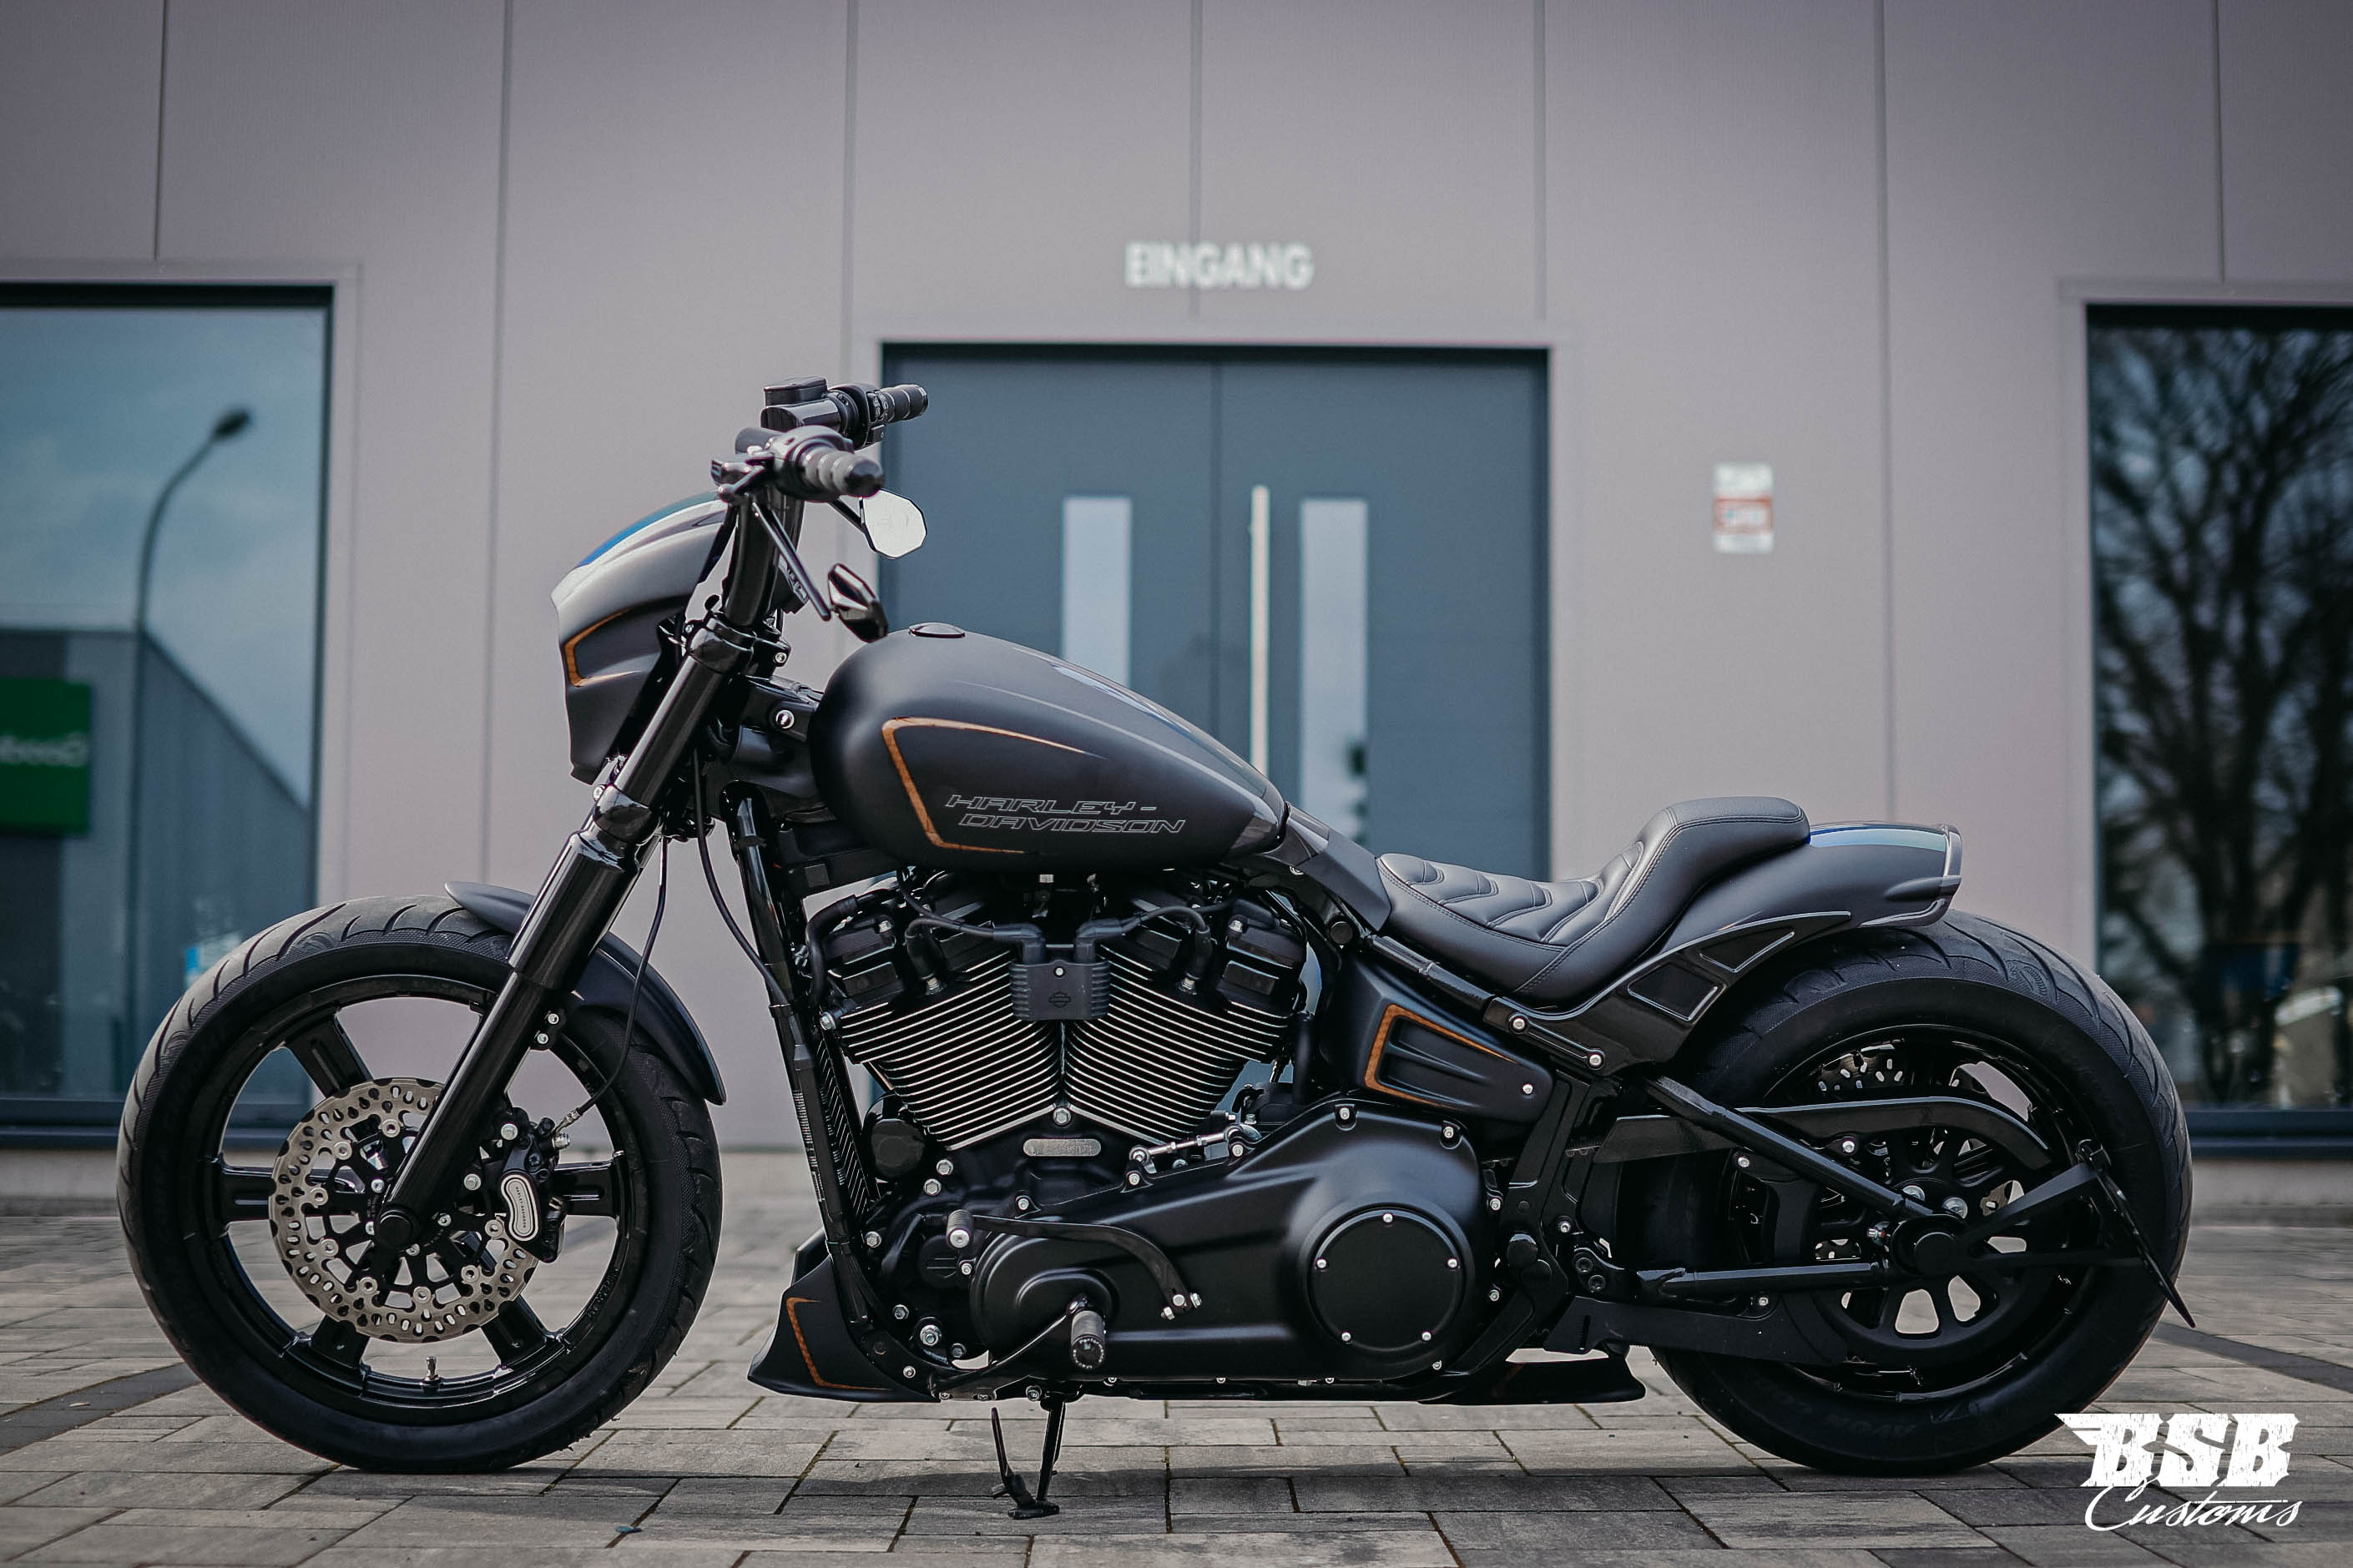 2021 Harley Davidson FXBBS Street BOB 114 CUI erst 1600 km Custom UMBAU // Finanzierung möglich !!!! 